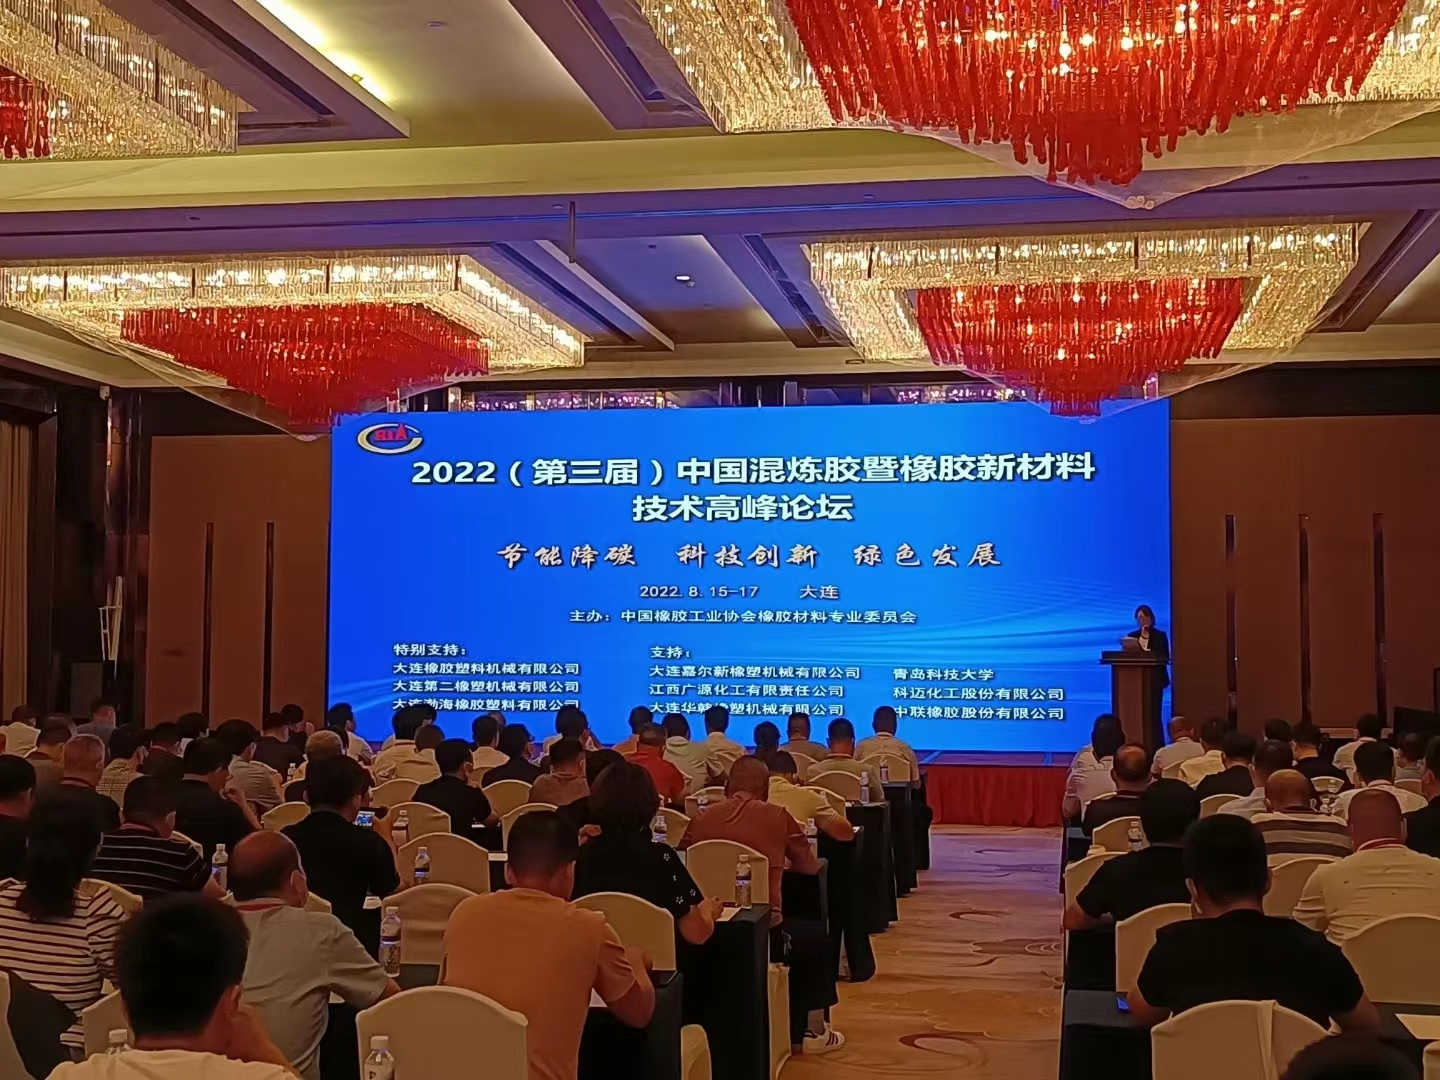 關于舉辦2022（第三屆）中國混煉膠暨橡膠新材料